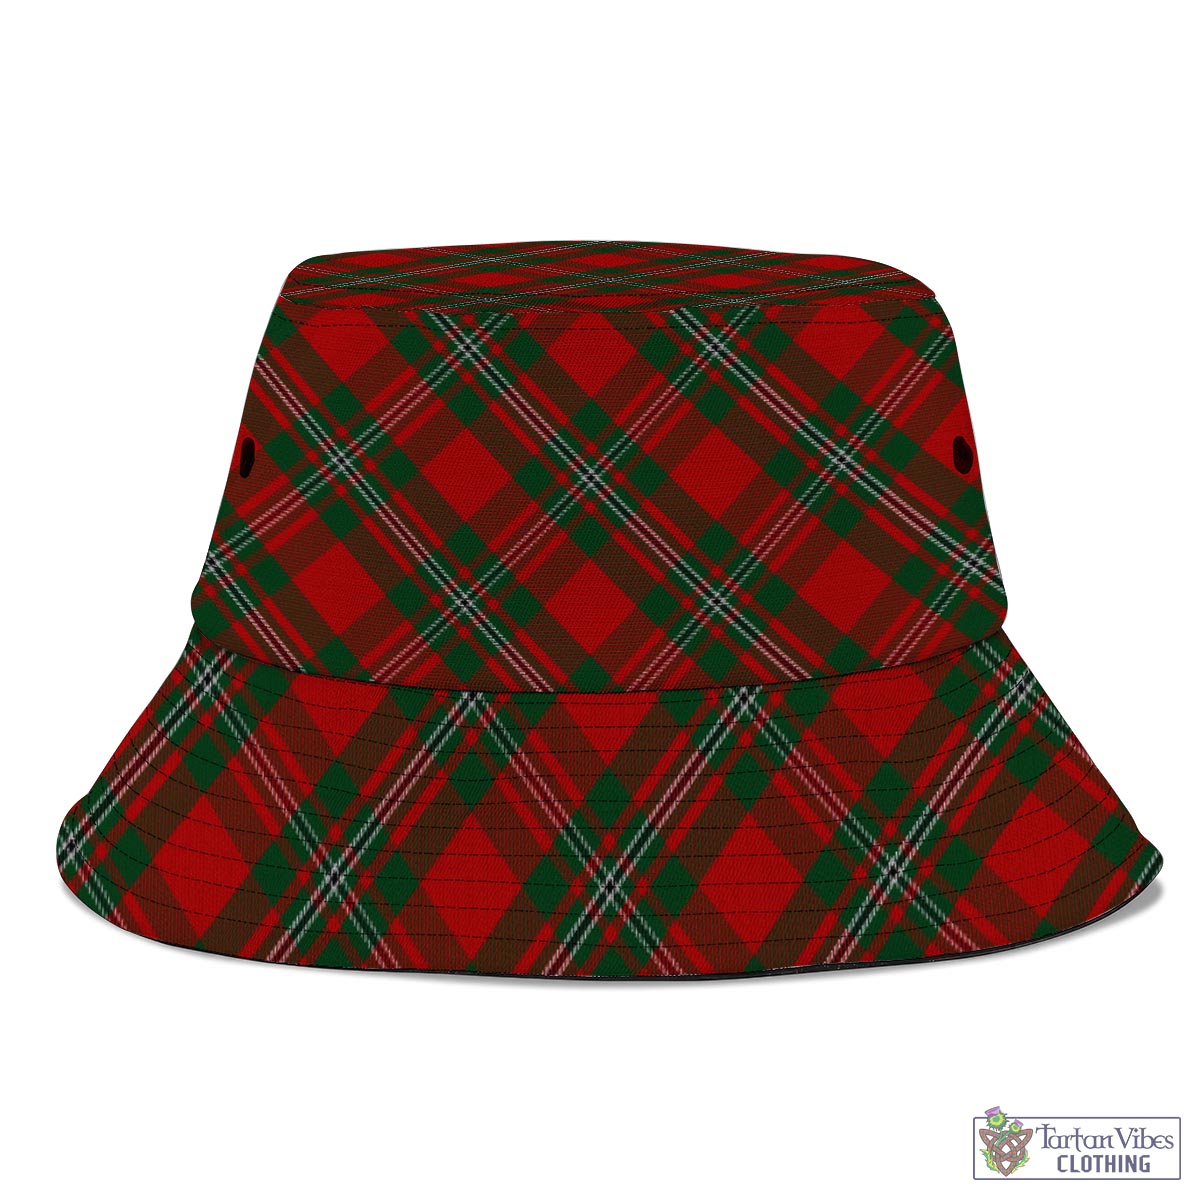 Tartan Vibes Clothing MacGregor Tartan Bucket Hat